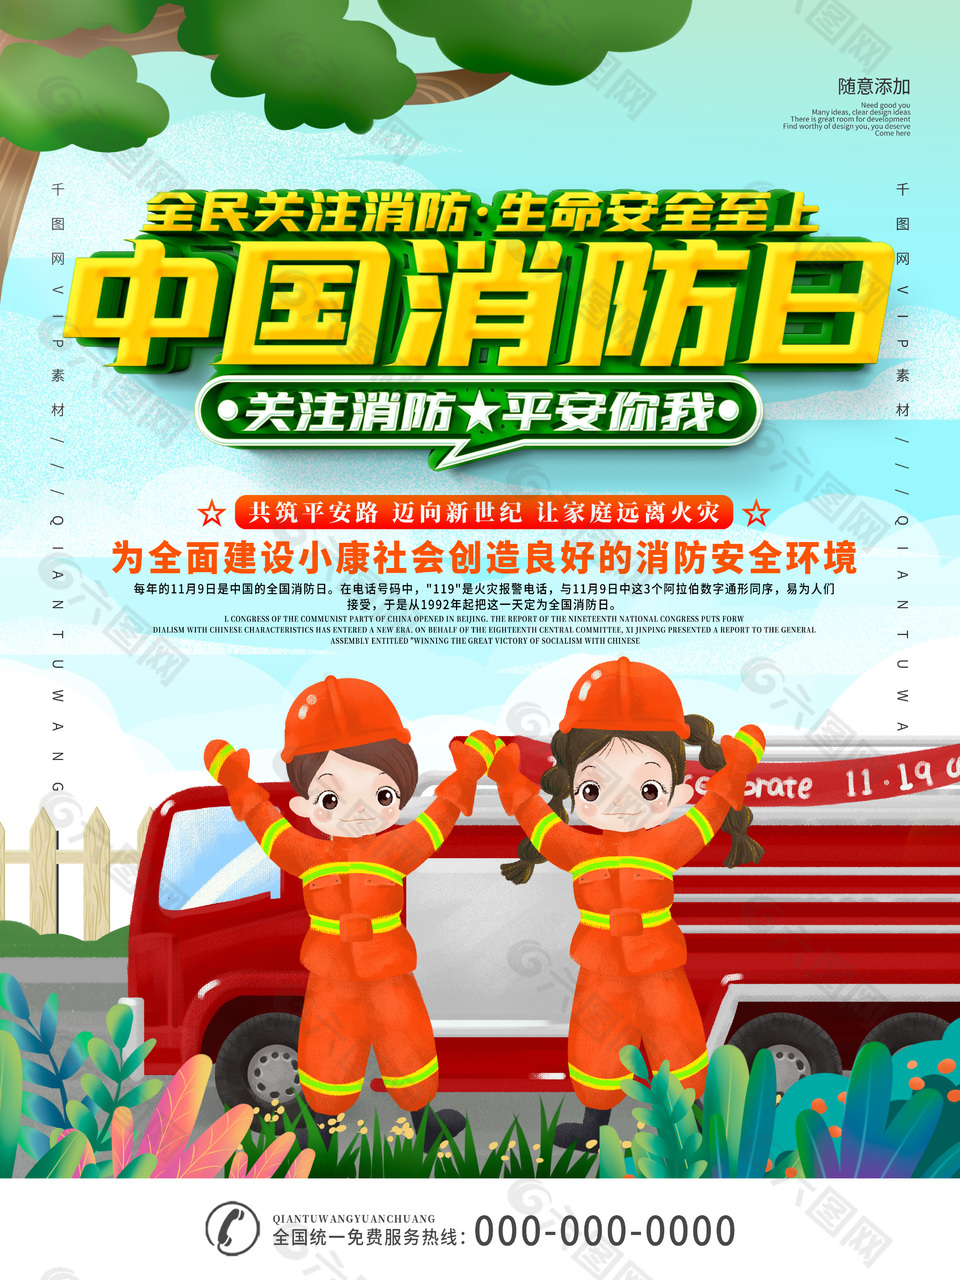 中国消防日宣传海报